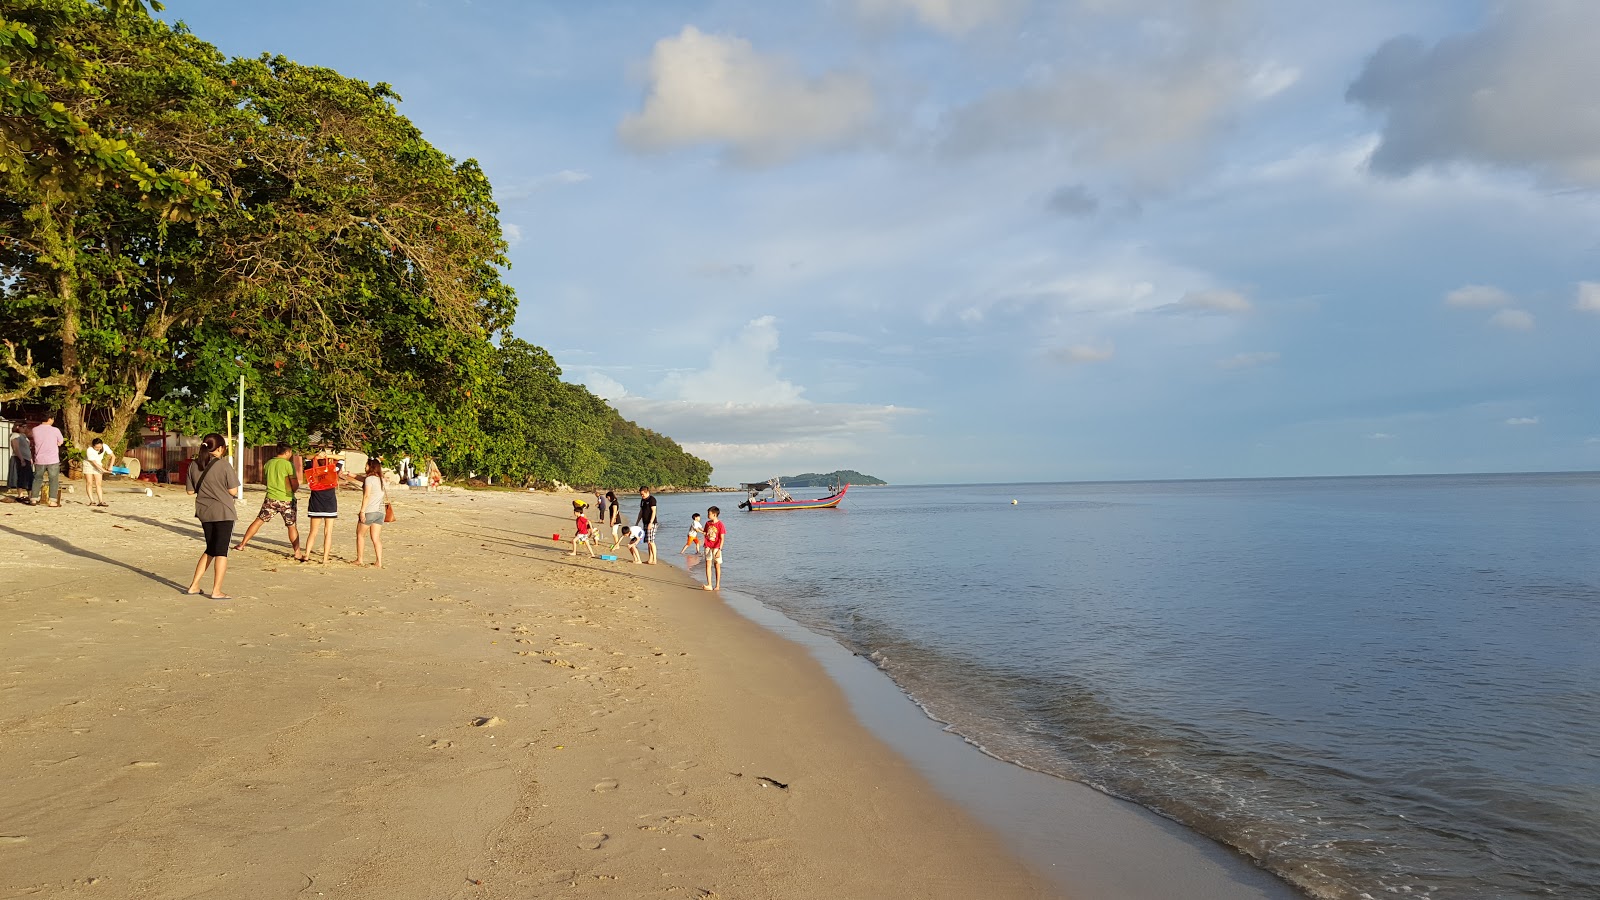 Ombak Damai Beach'in fotoğrafı - rahatlamayı sevenler arasında popüler bir yer